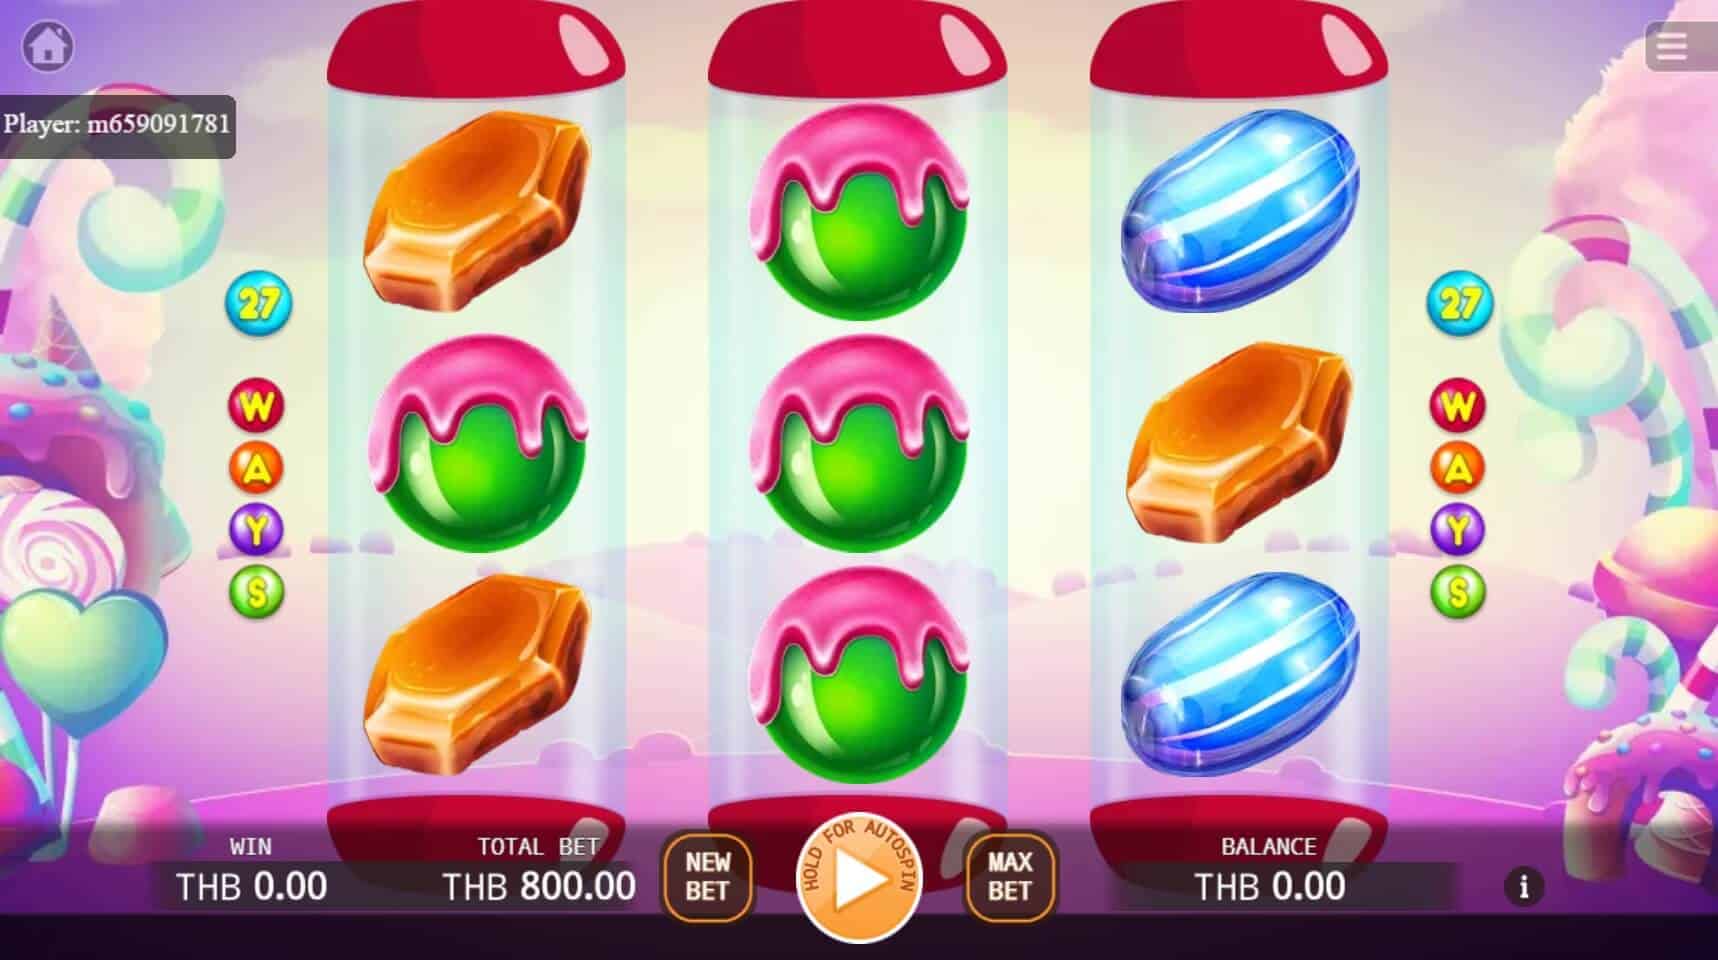 Quick Play Candy สล็อต เว็บตรง ไม่ผ่ายเอเย่นต์ ค่าย KA Gaming สล็อตโจ๊กเกอร์ 888